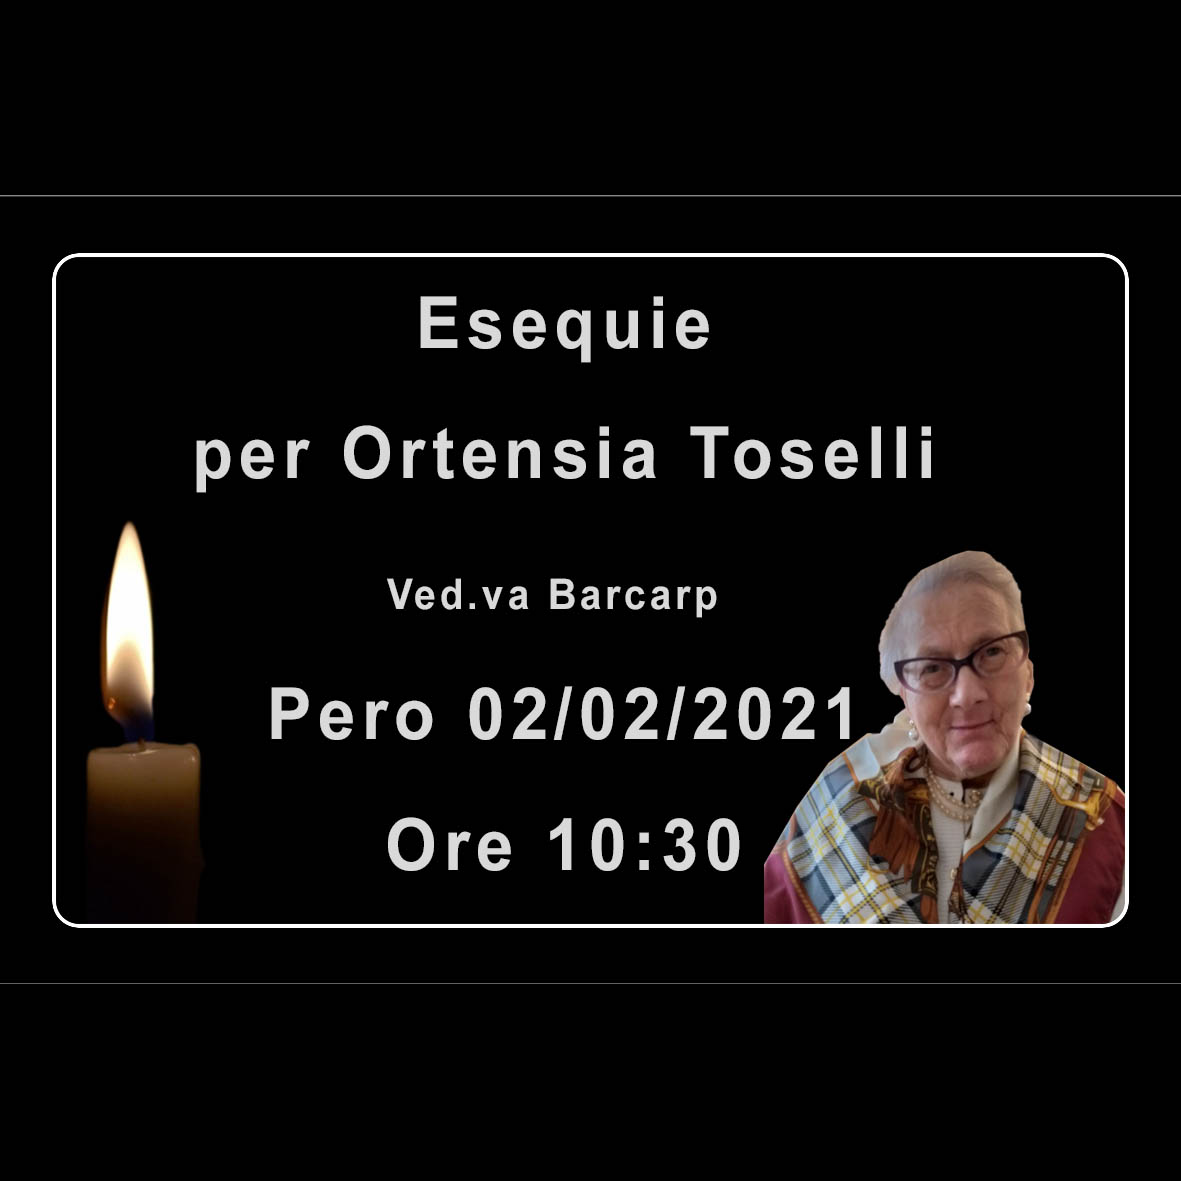 Esequie per Ortensia Toselli